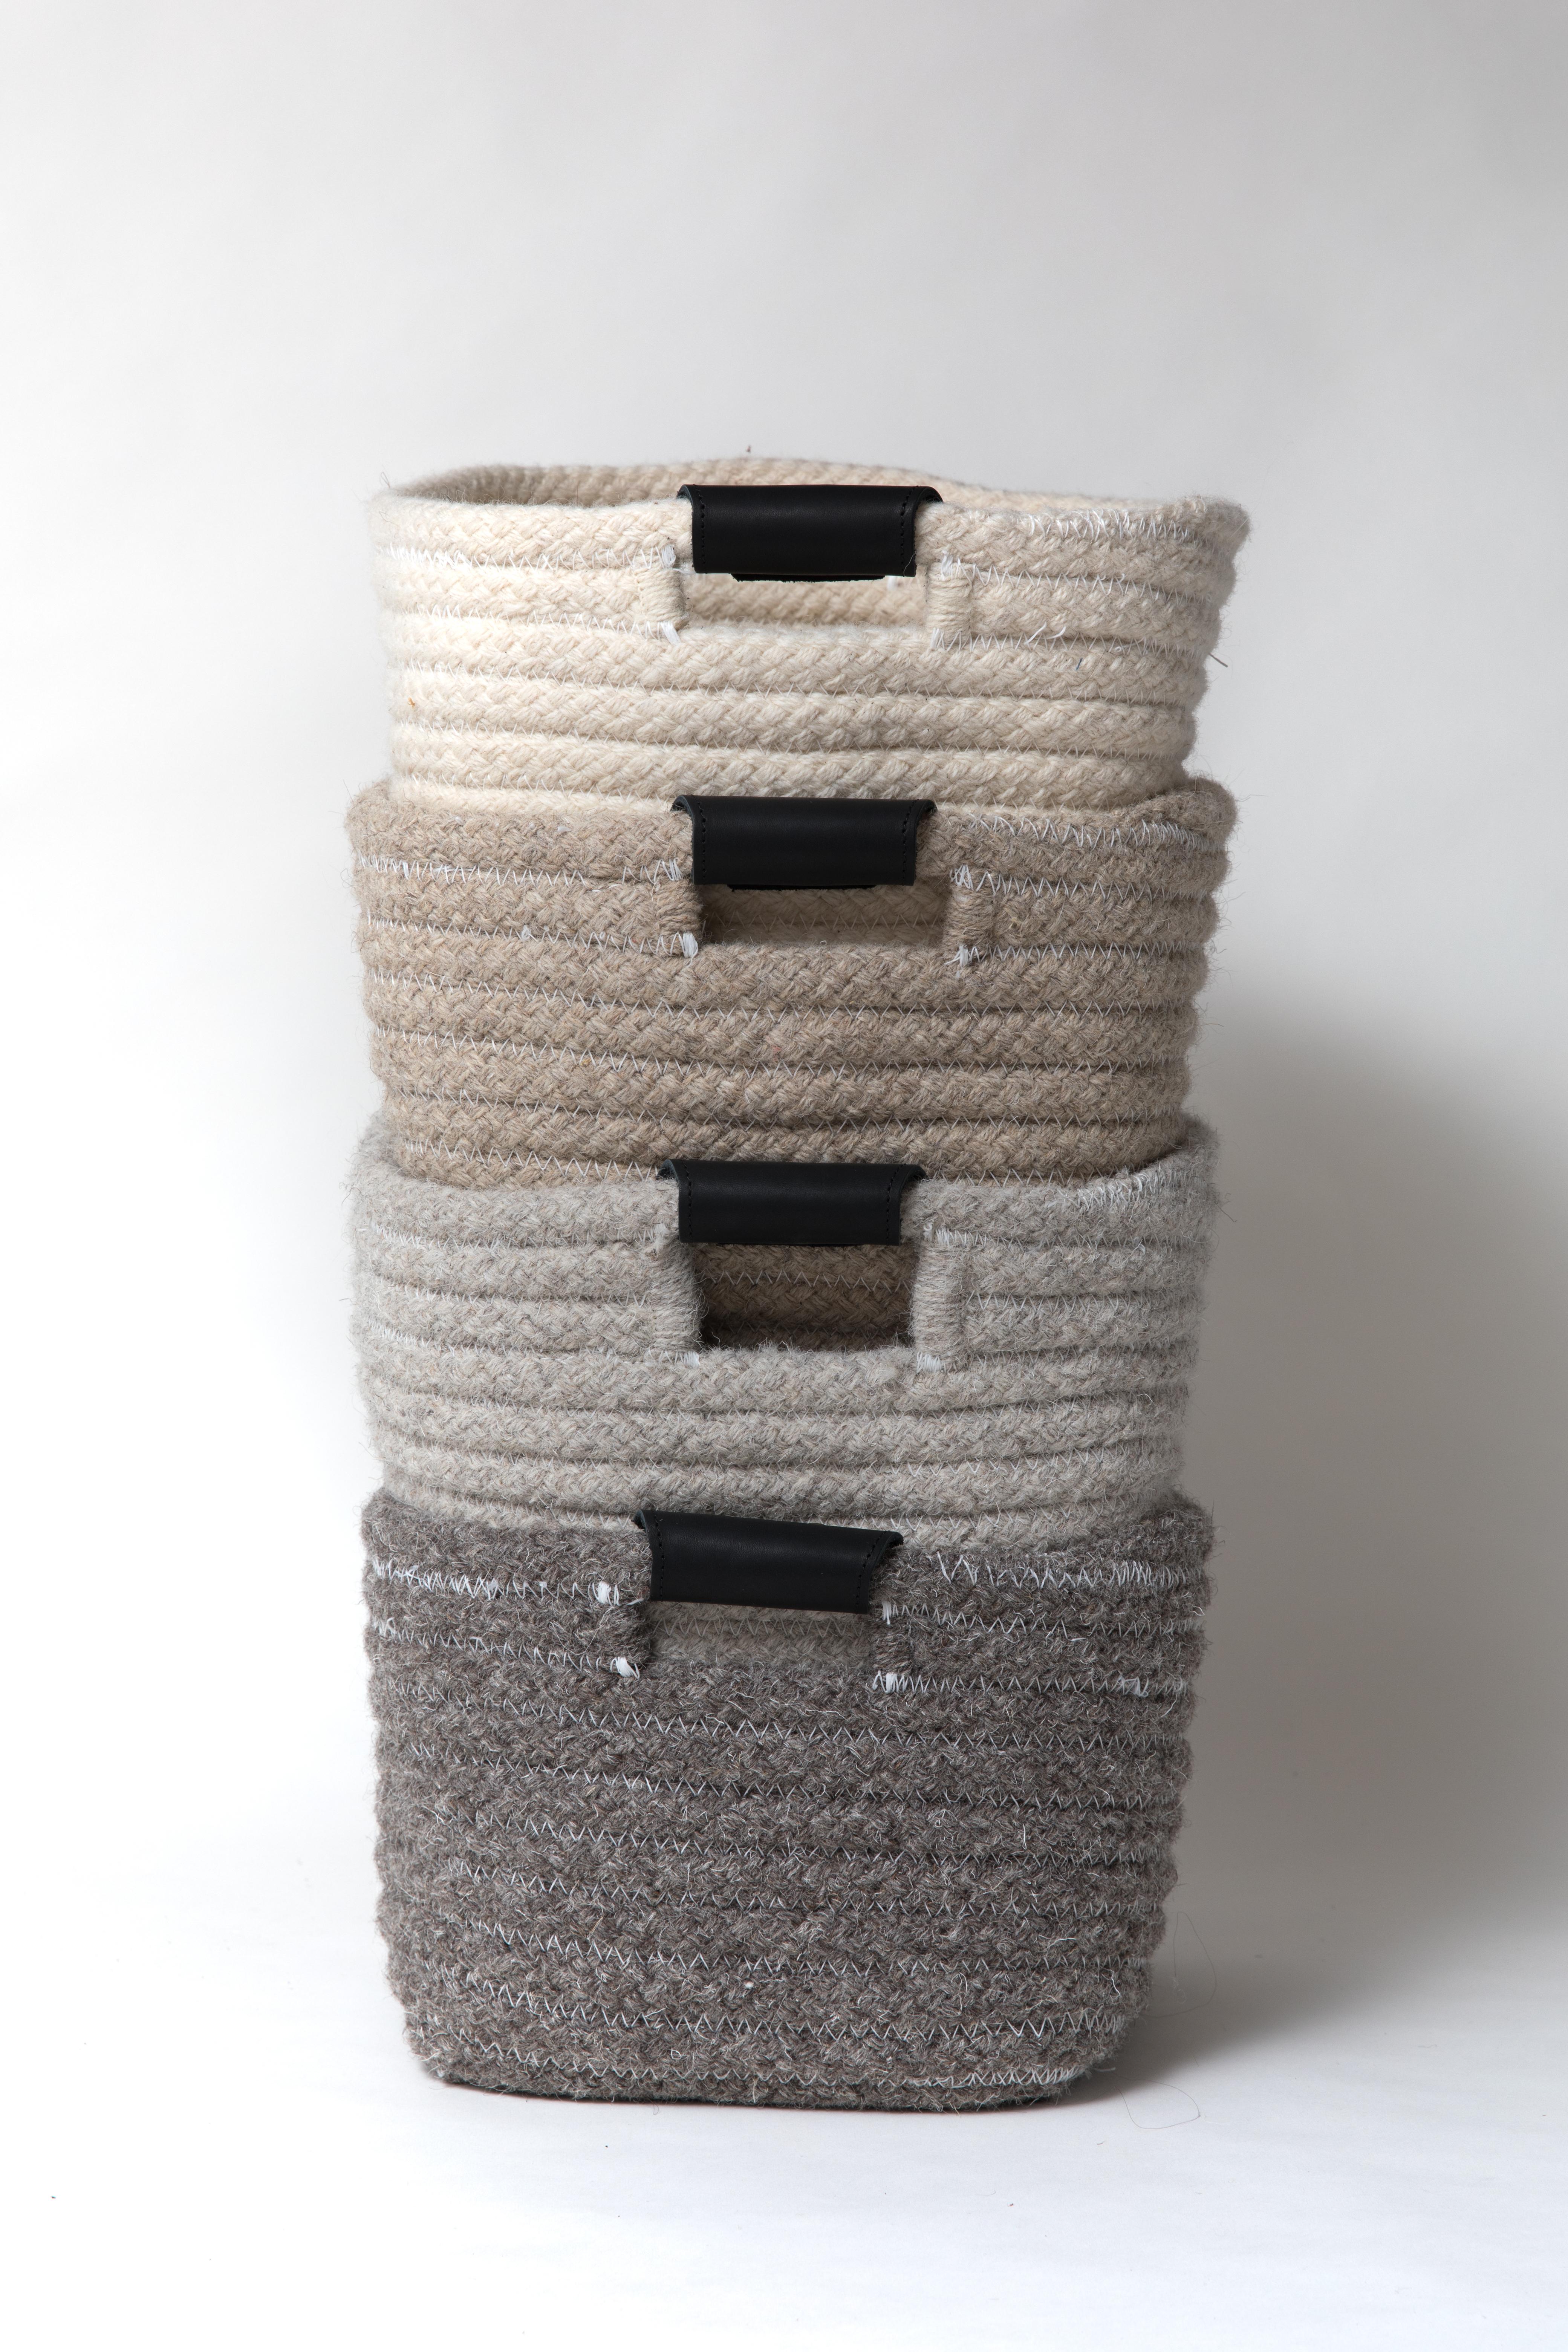 Américain Thayer Design Studio, laine naturelle, gris foncé, grand panier tissé en vente